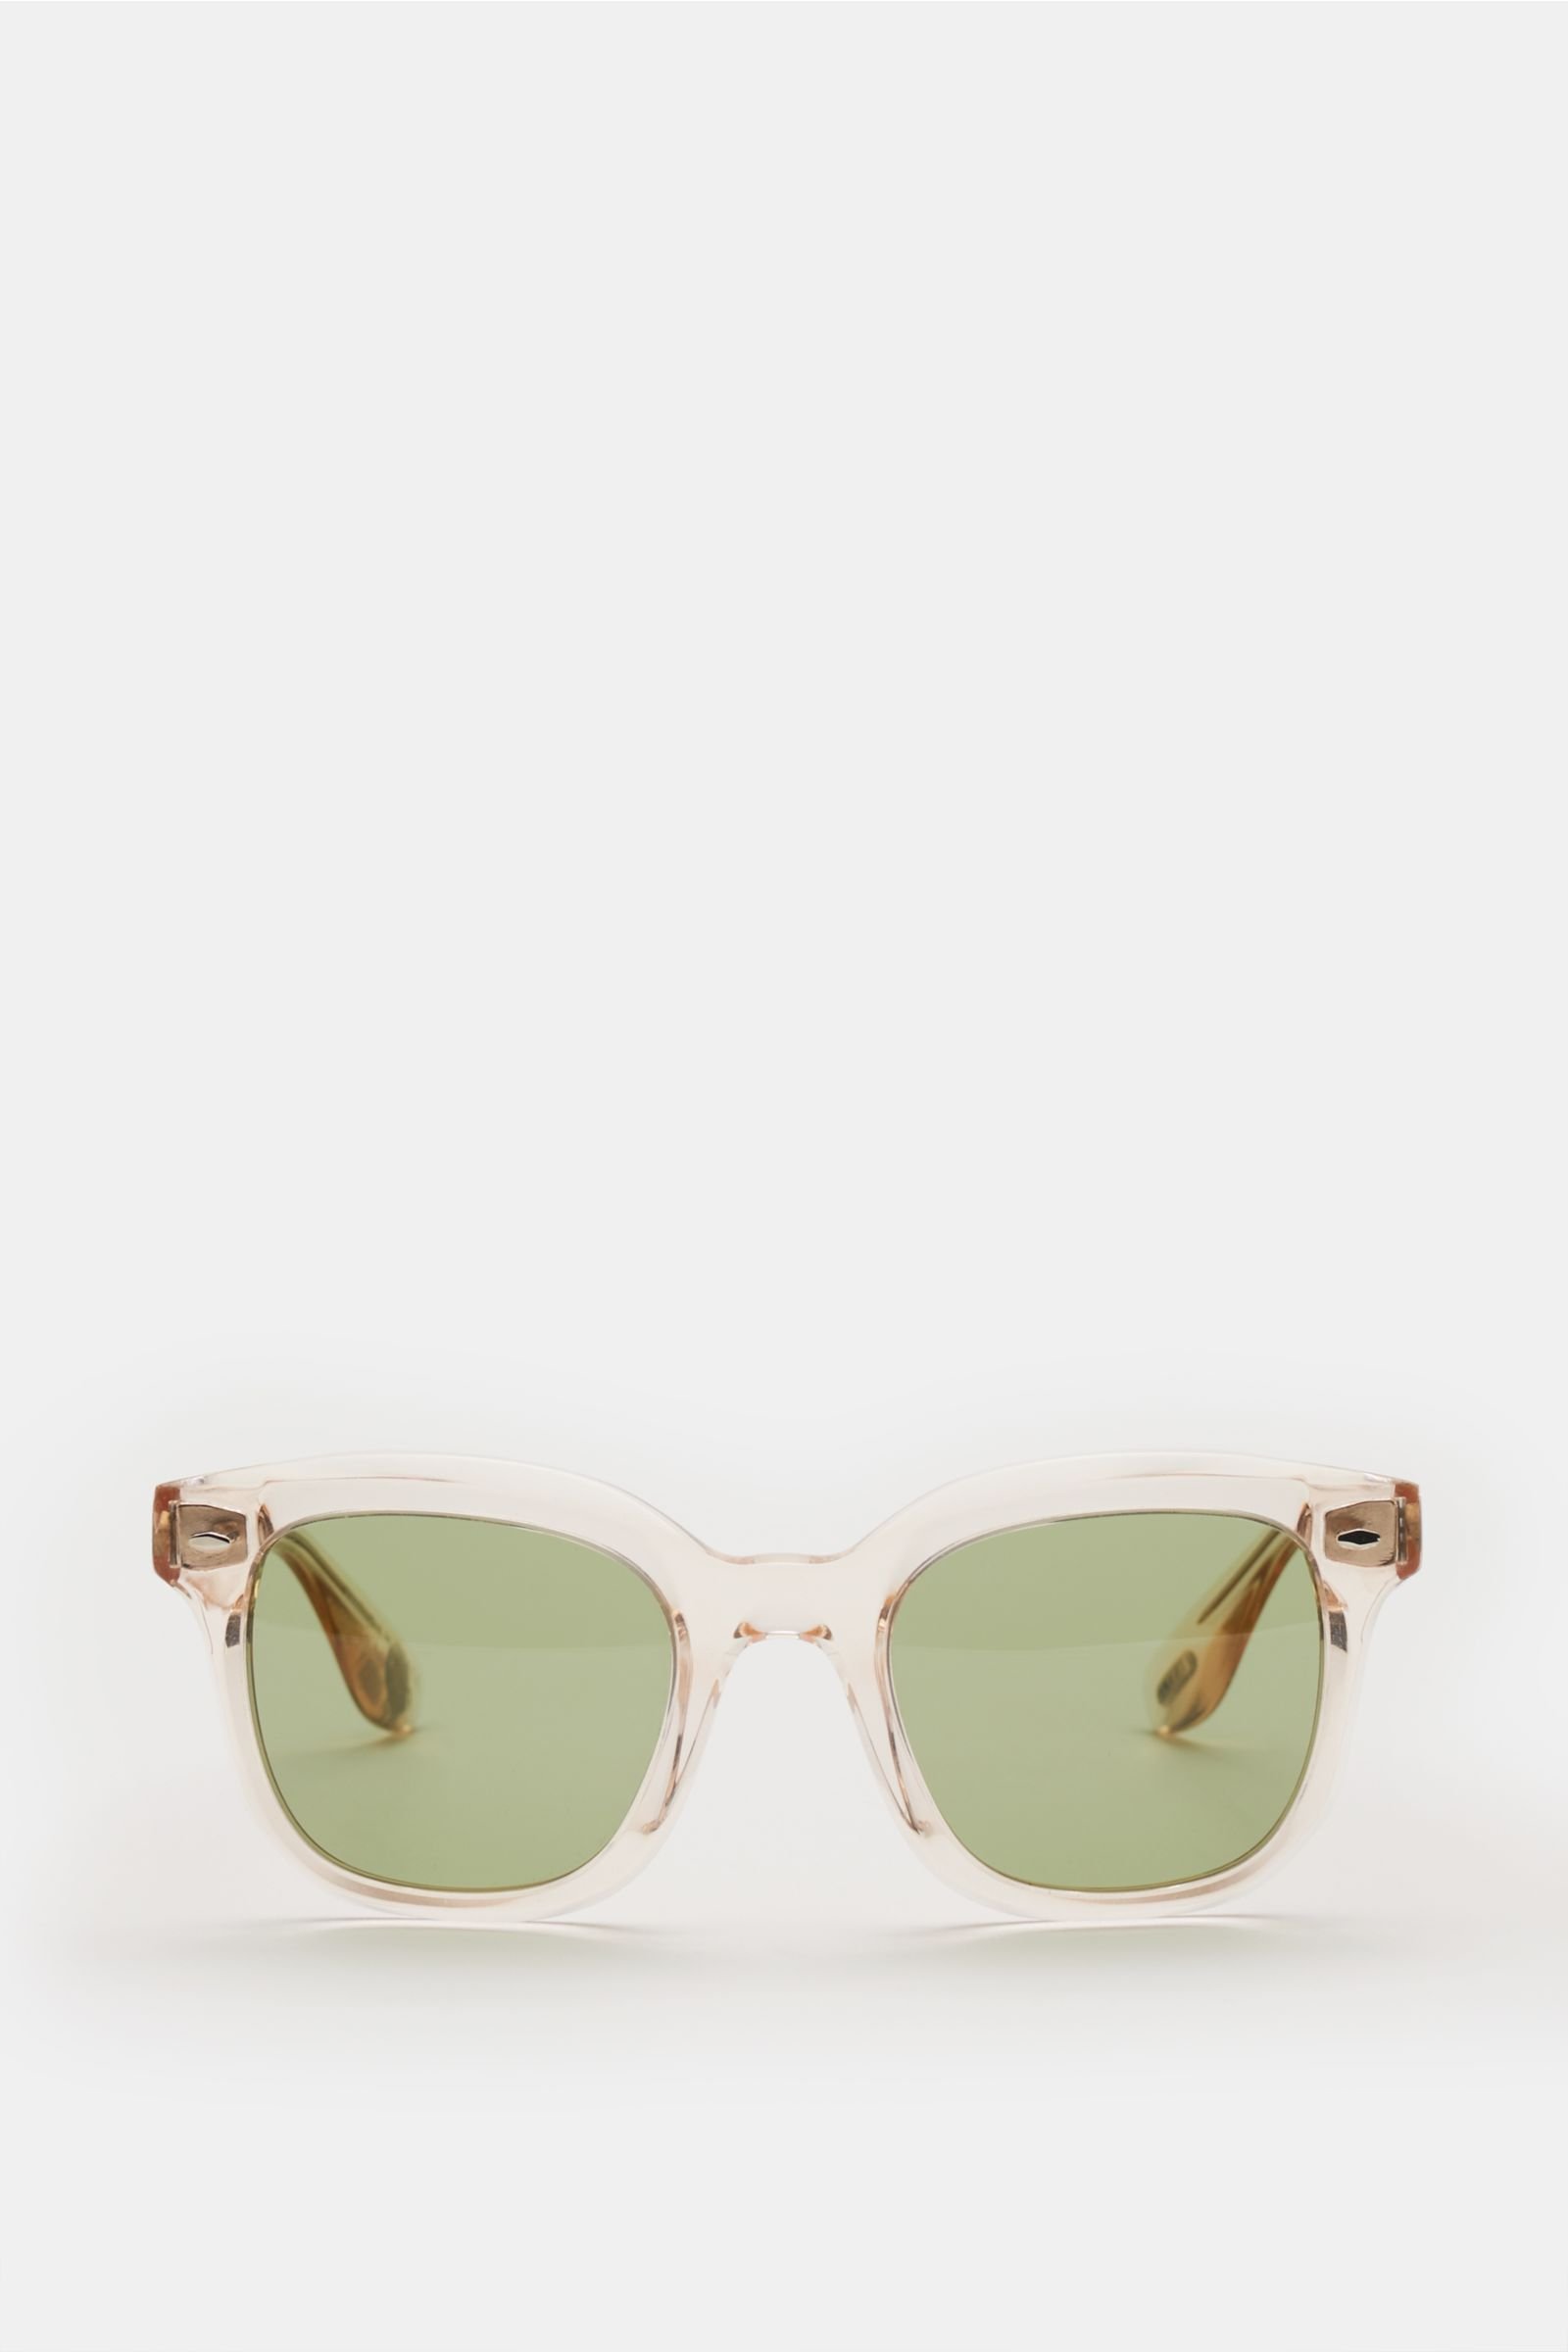 Sonnenbrille 'Filù' beige/grün